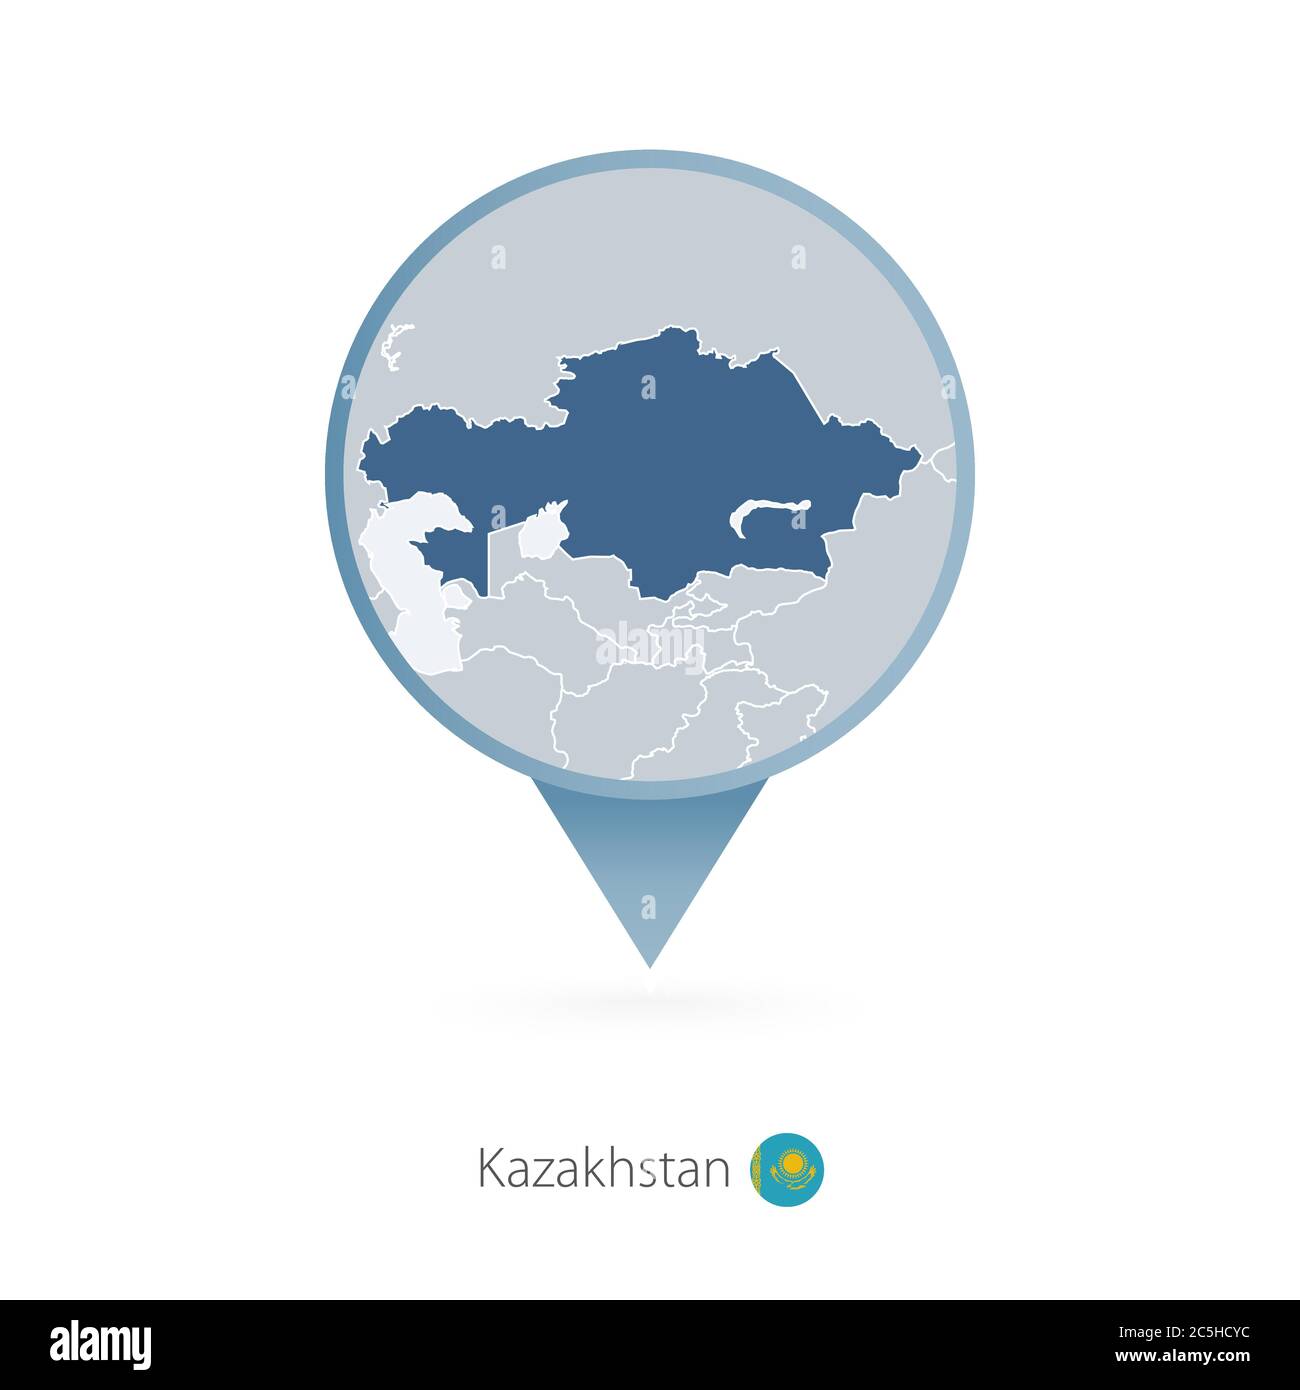 Mappa con mappa dettagliata del Kazakistan e dei paesi vicini. Illustrazione Vettoriale